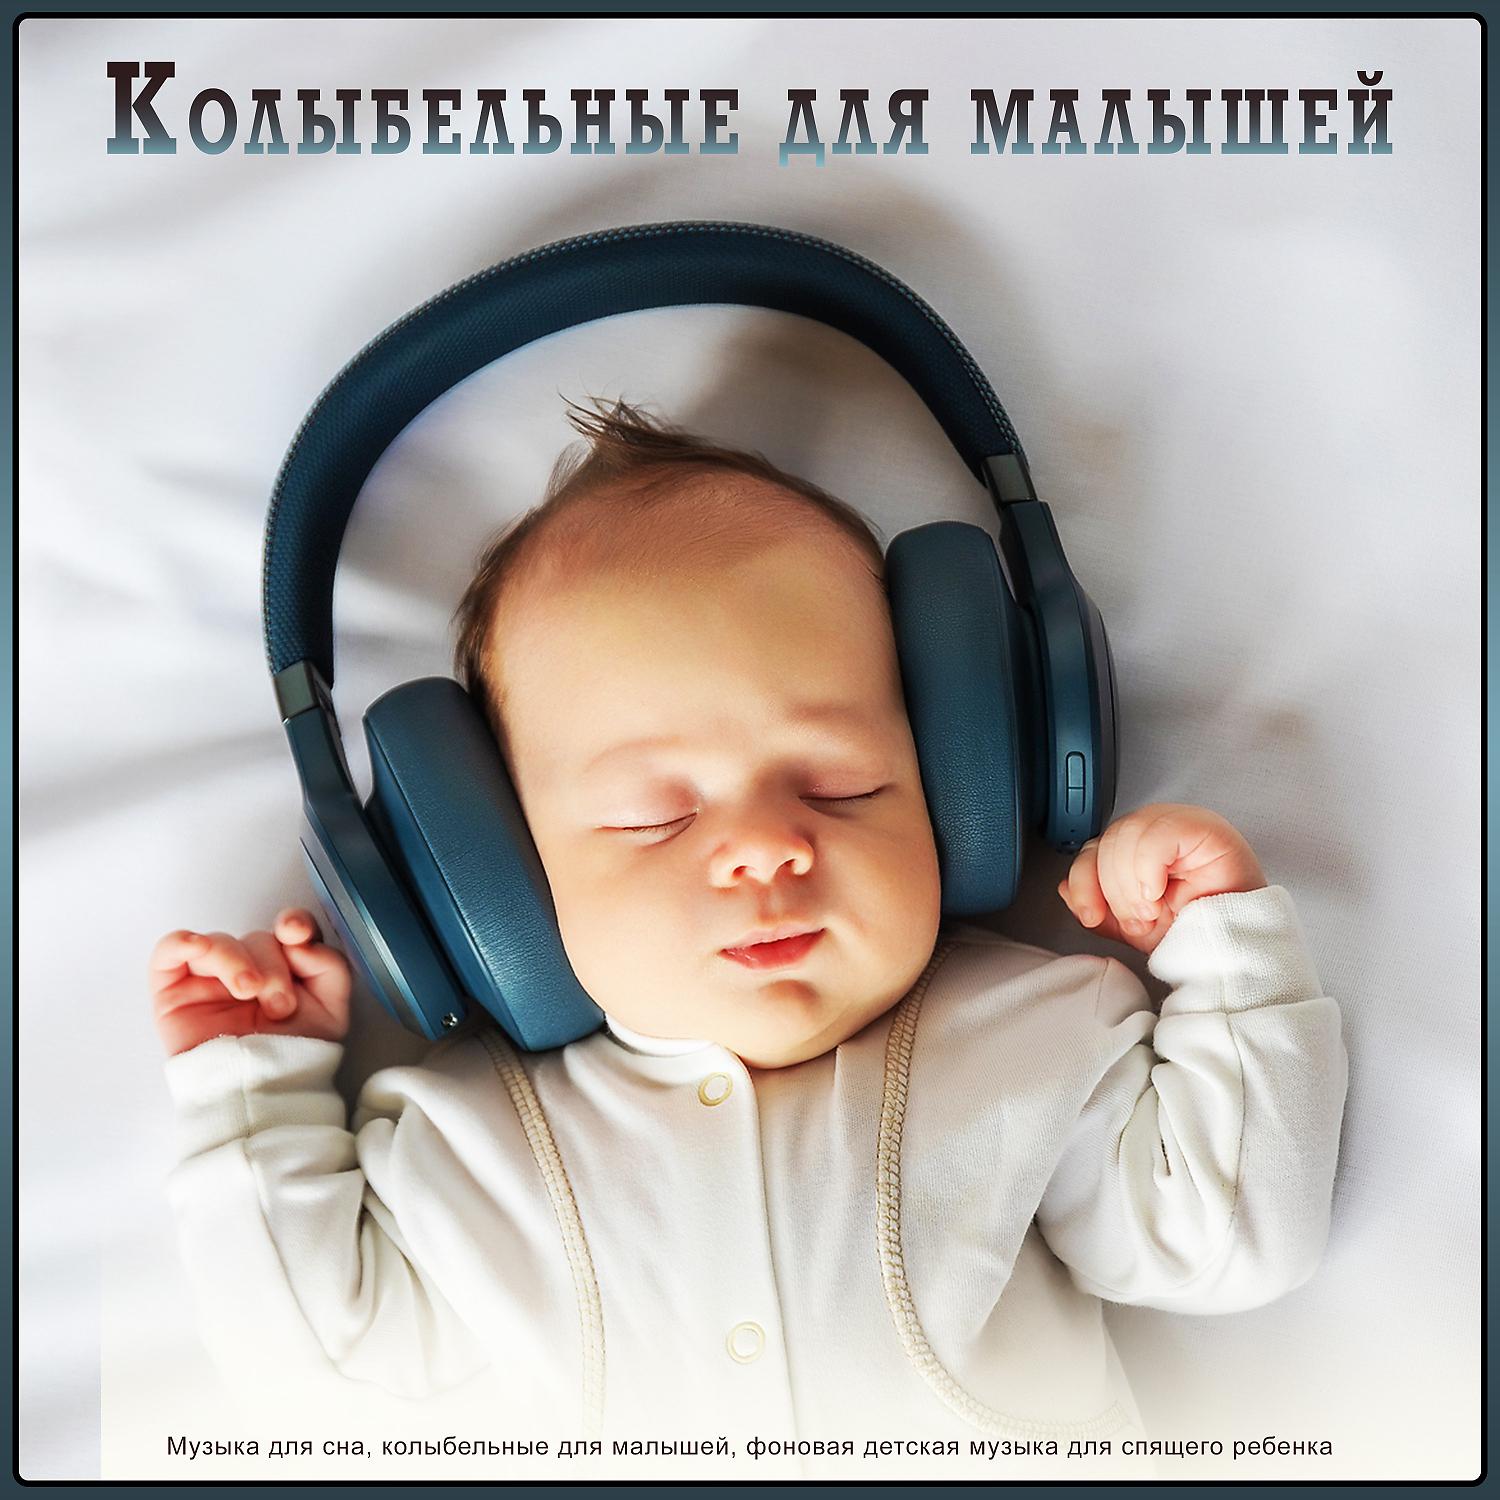 Слушать музыку для сна всем. Музыка для сна младенца. Музыка для сна для малышей. Мелодии для засыпания малышей. Колыбельная для малышей успокаивающая.